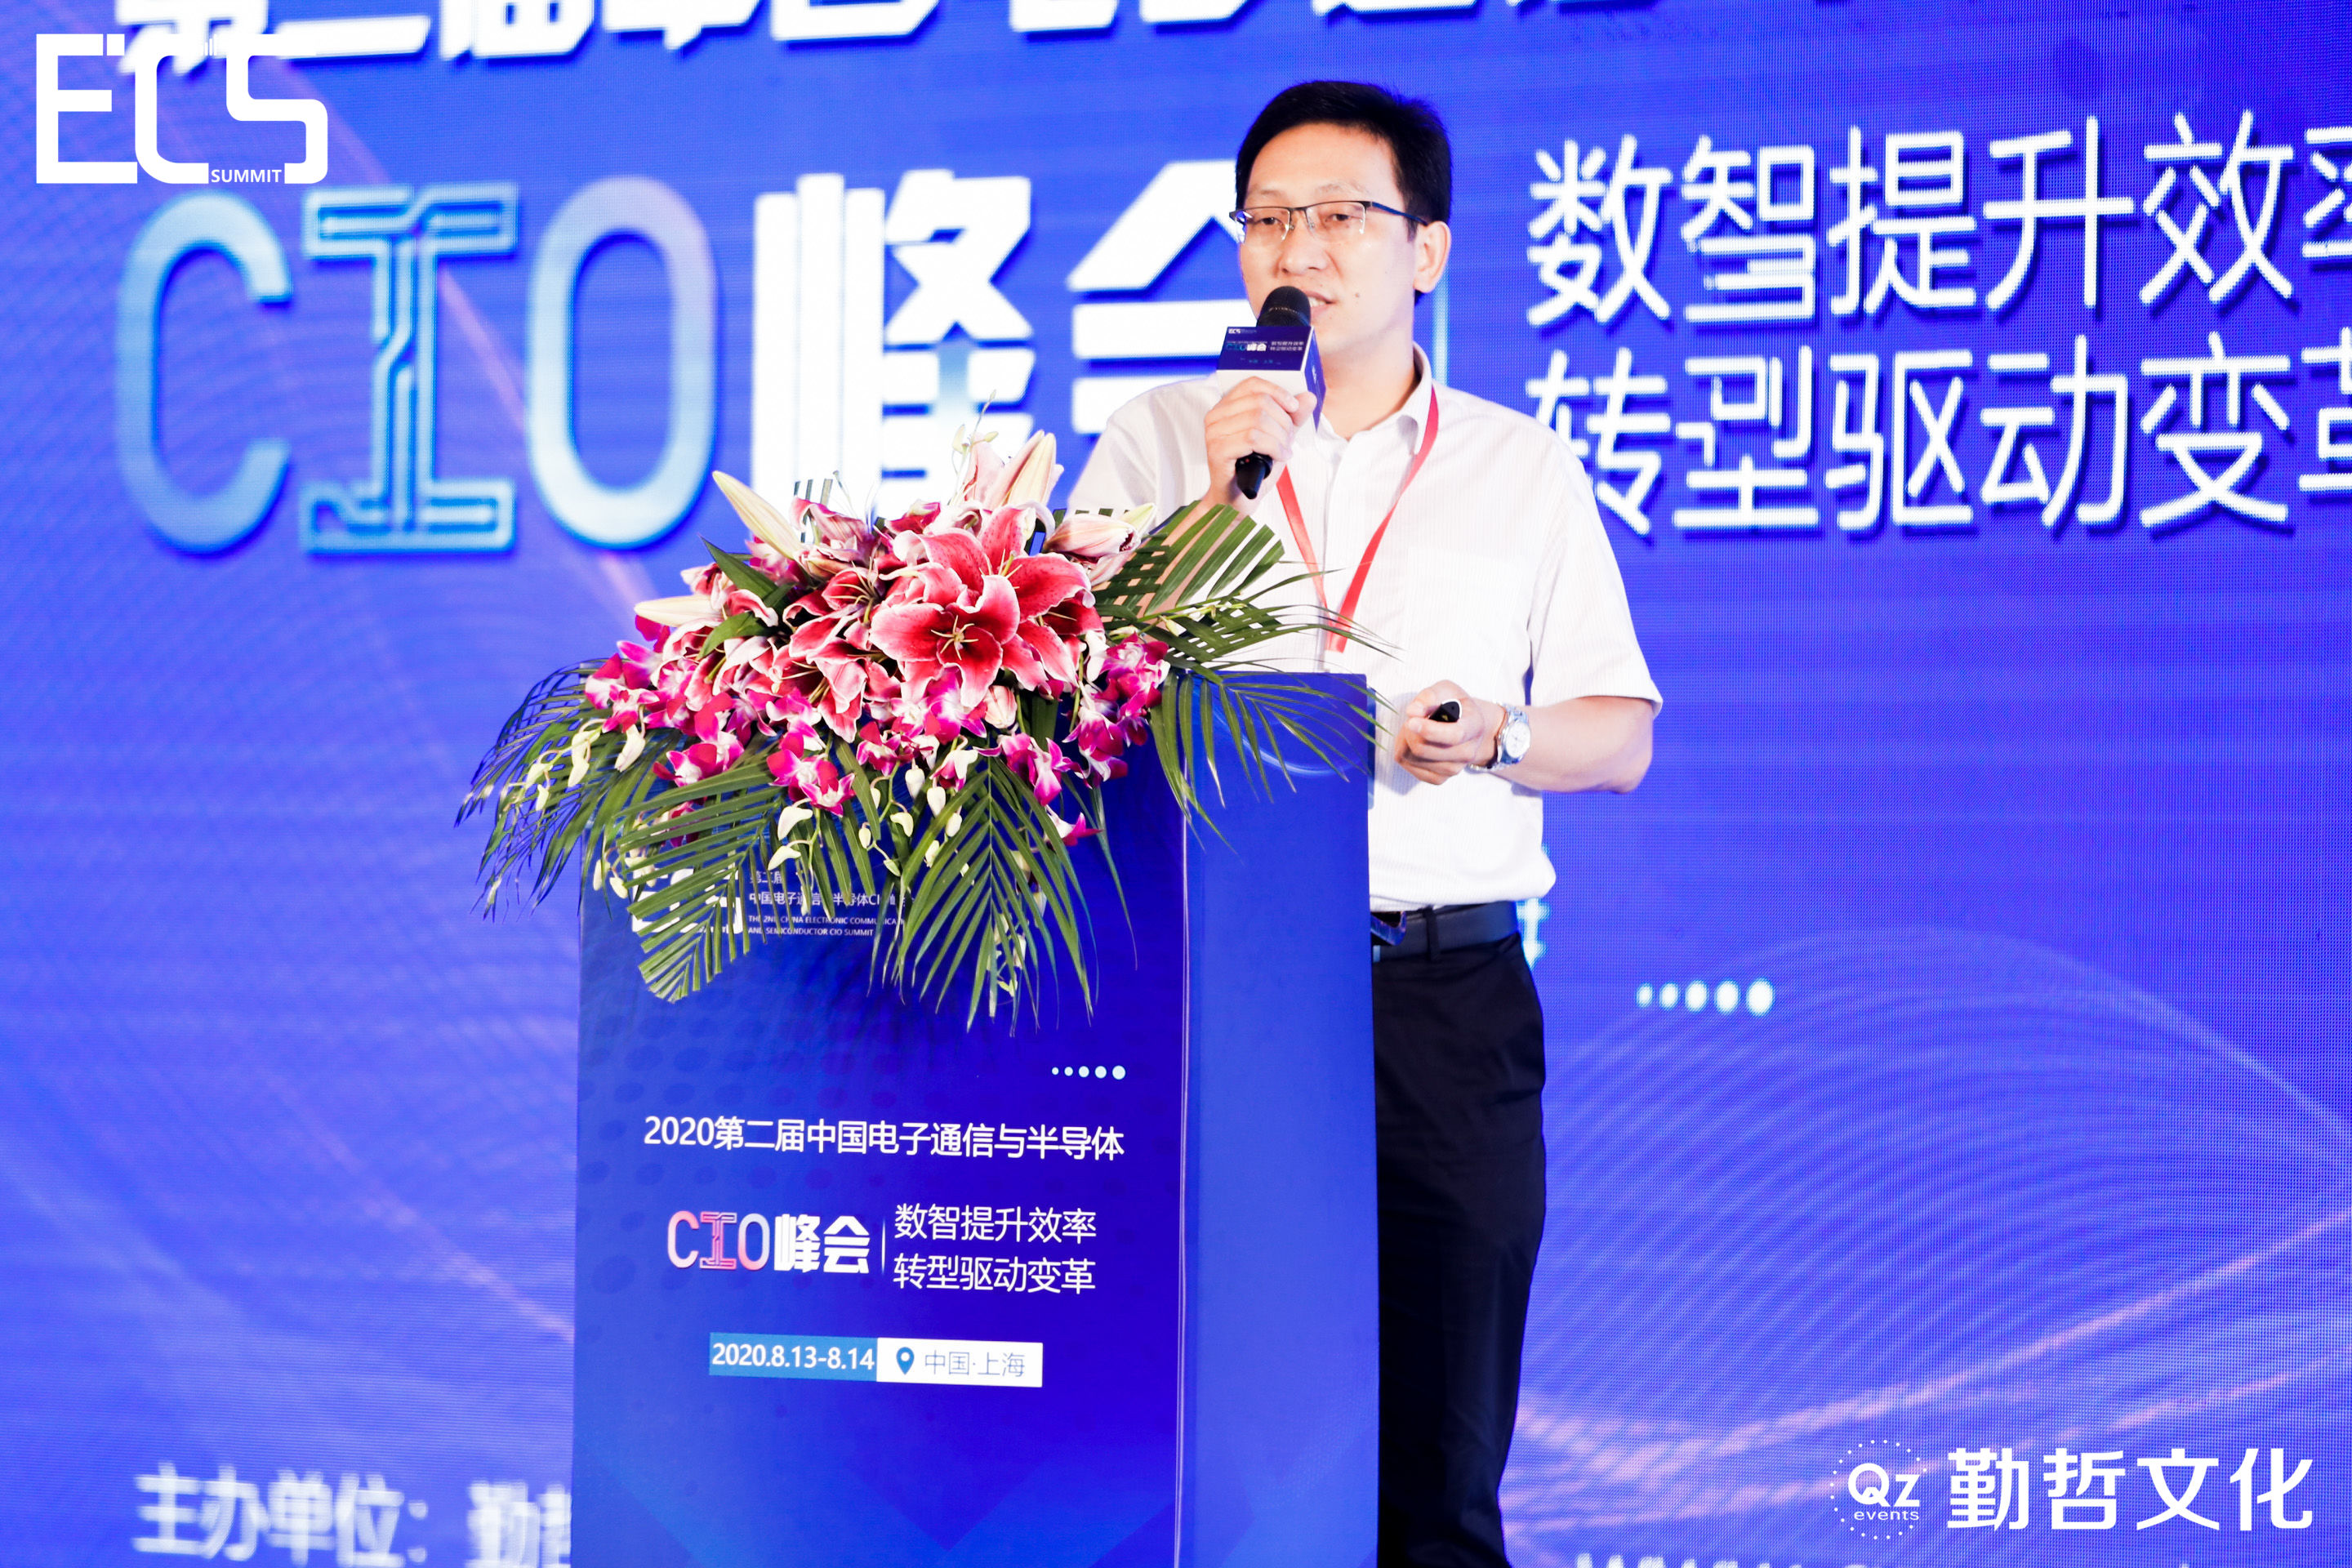 ECS2020_中国电子通信_半导体_CIO峰会_数据猿-15